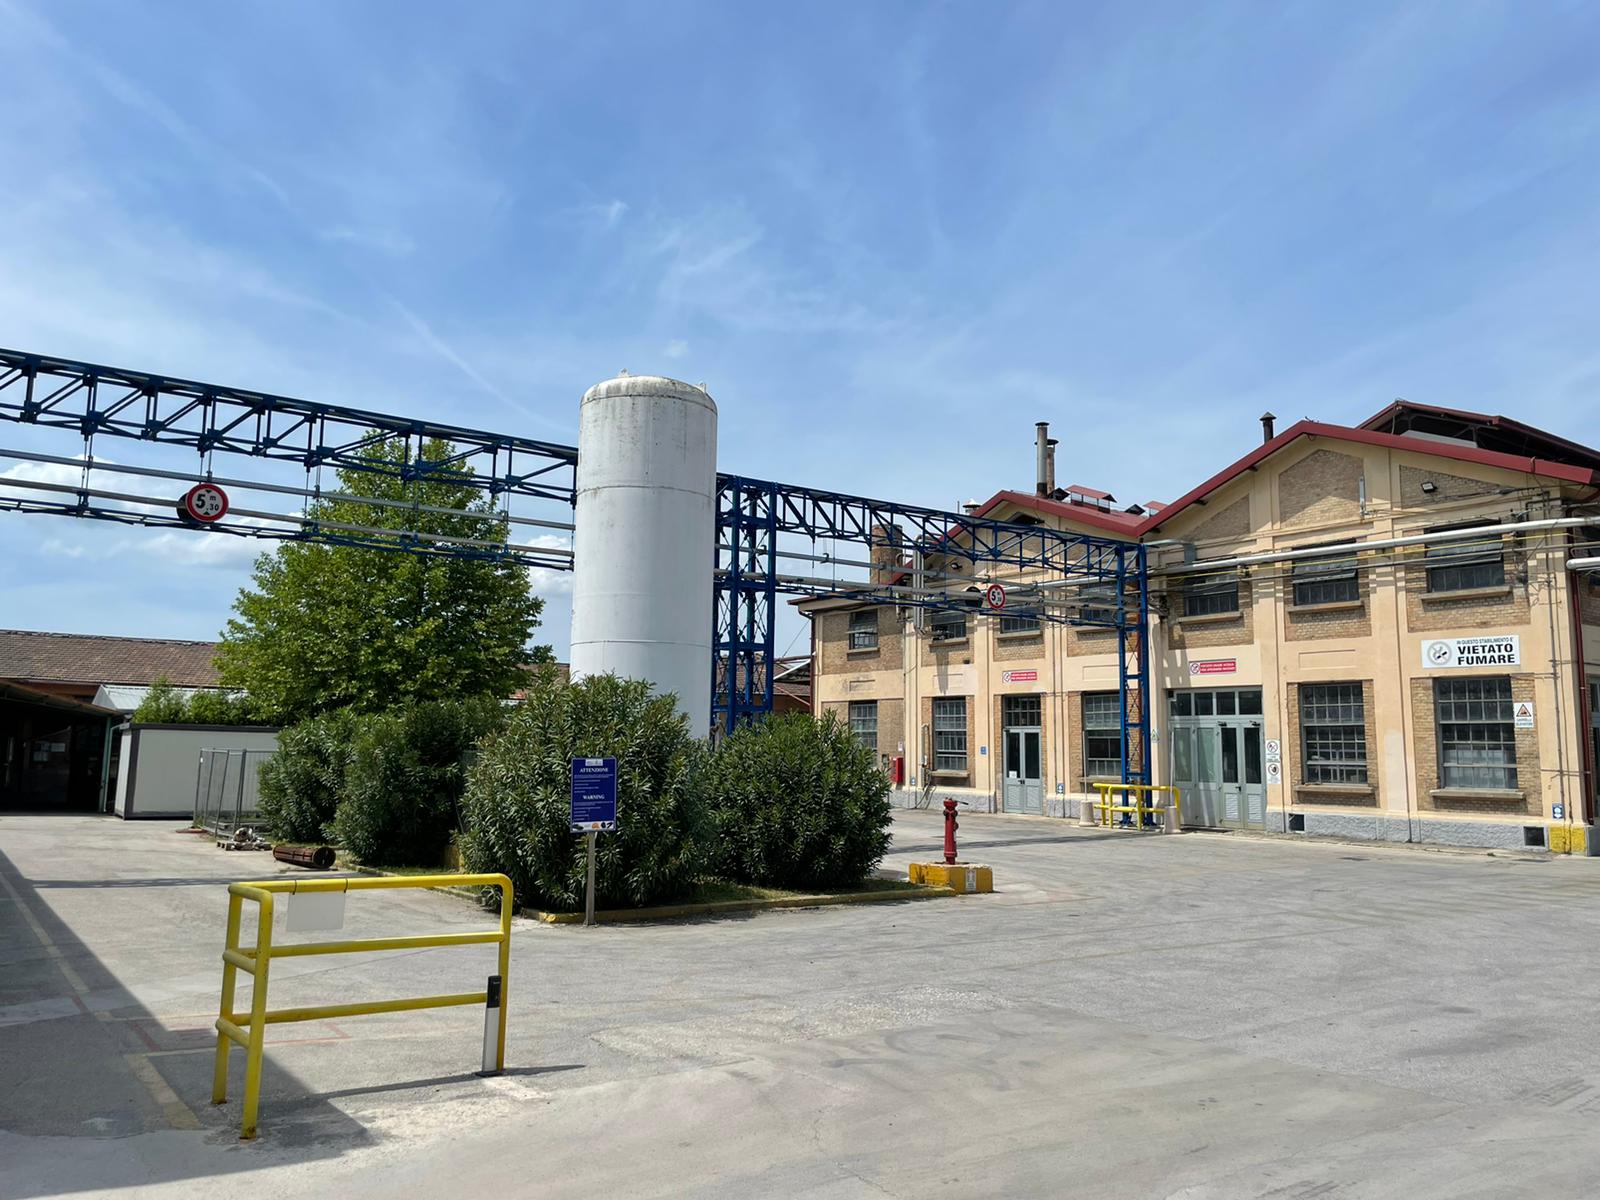 Spoleto Italmatch plant